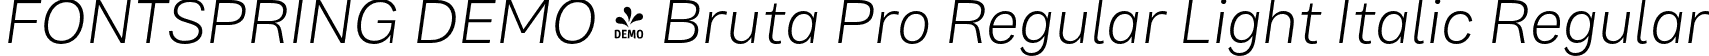 FONTSPRING DEMO - Bruta Pro Regular Light Italic Regular font | Fontspring-DEMO-brutaproregular-lightitalic.otf